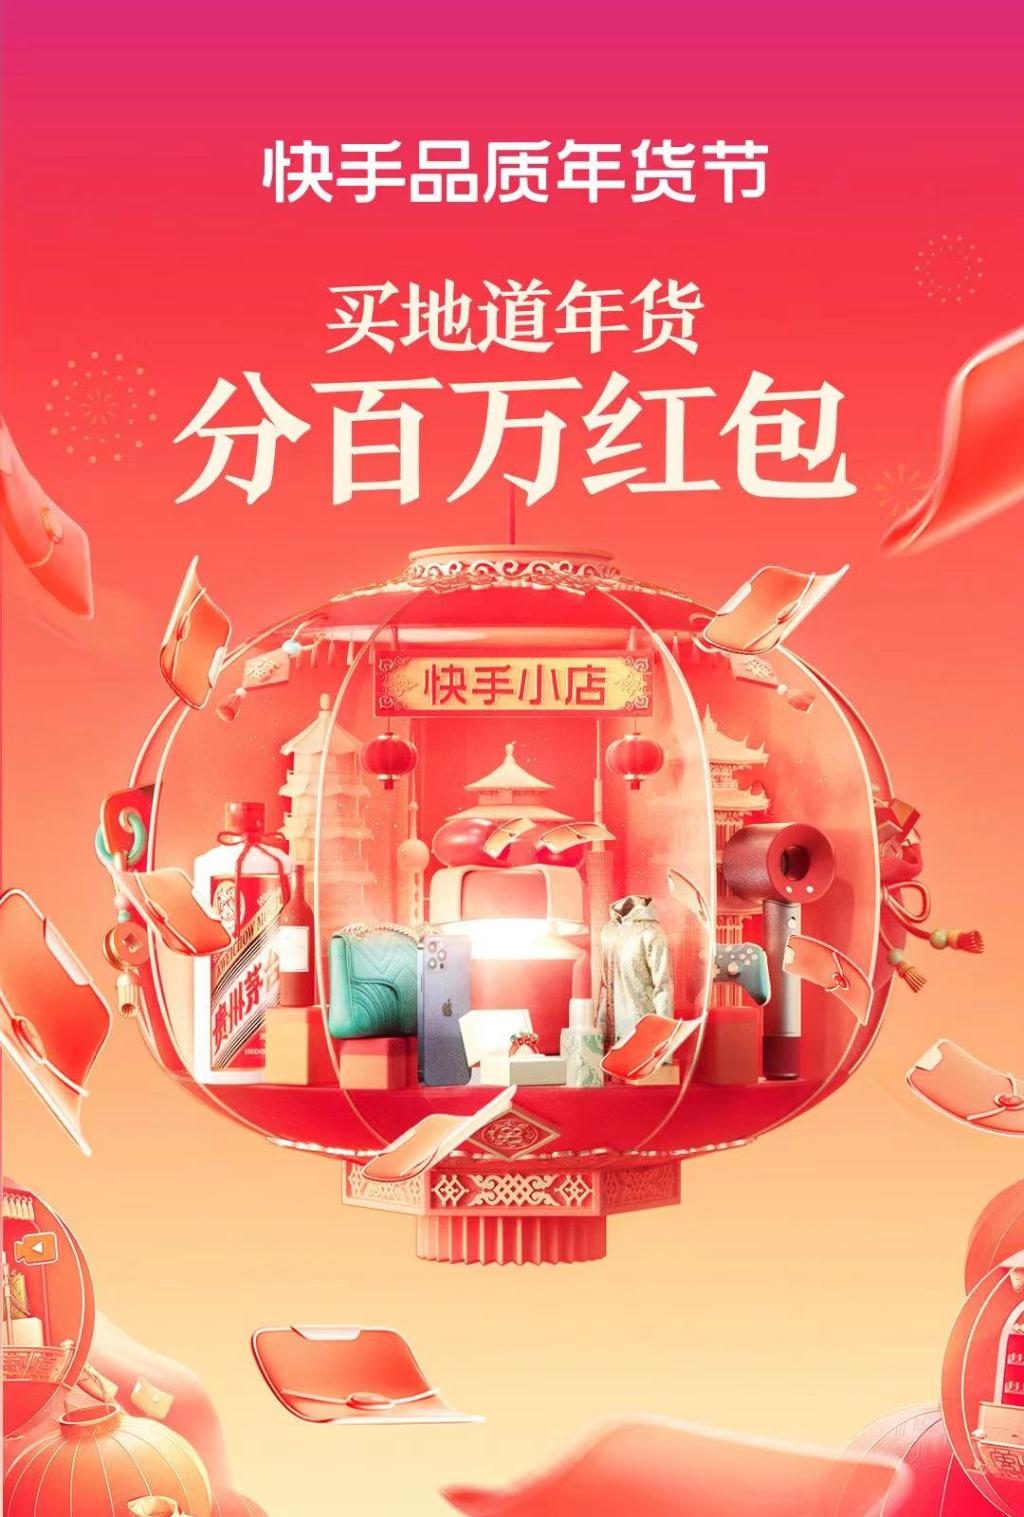 2022爱尚重庆·网上年货节启幕 这些电商平台的年货好物等你“薅羊毛”